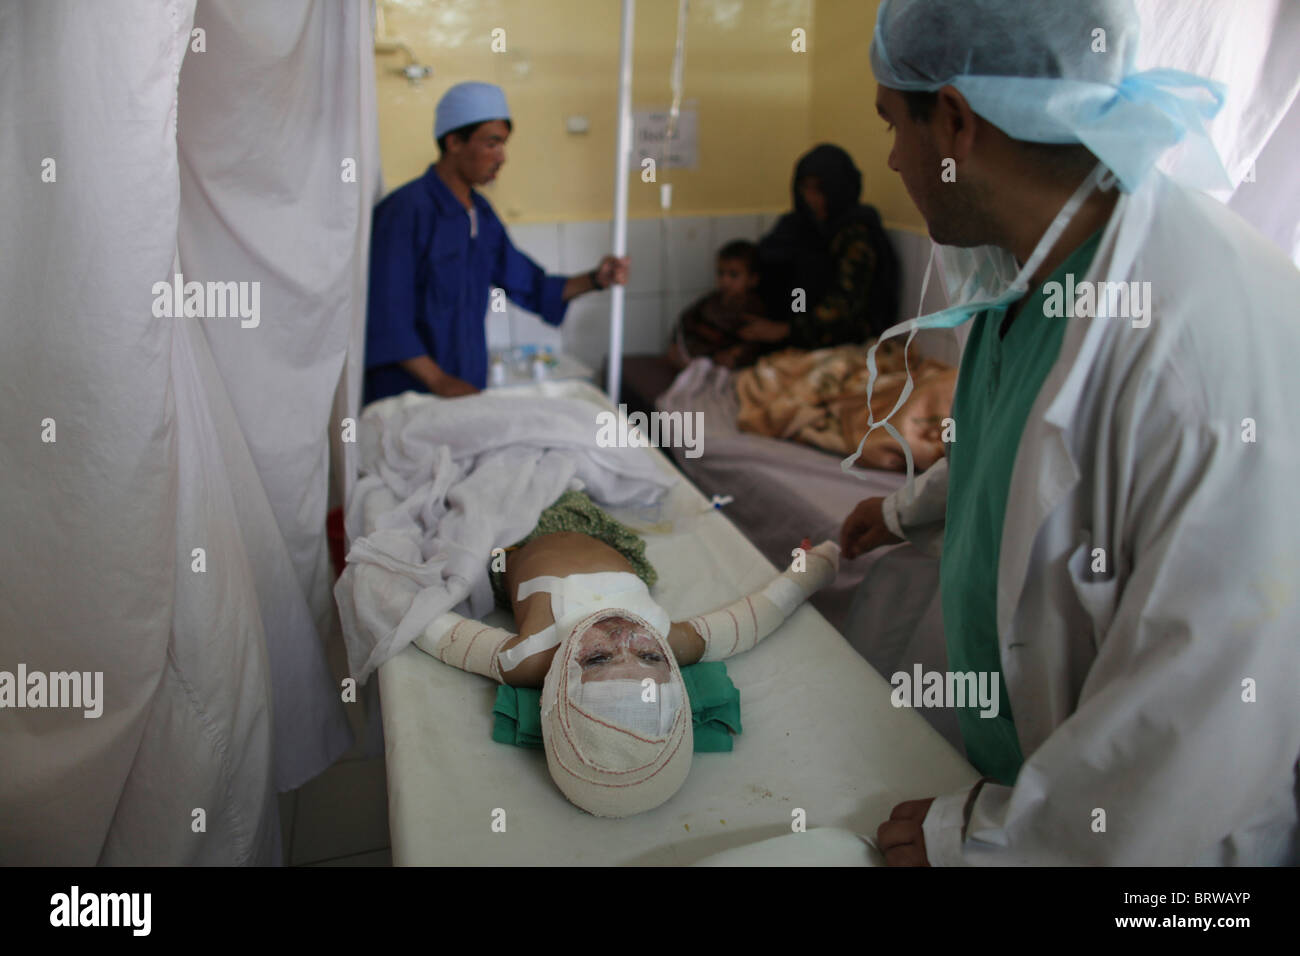 Verbrennungsopfer von einem IED-Anschlag in Afghanistan Stockfoto